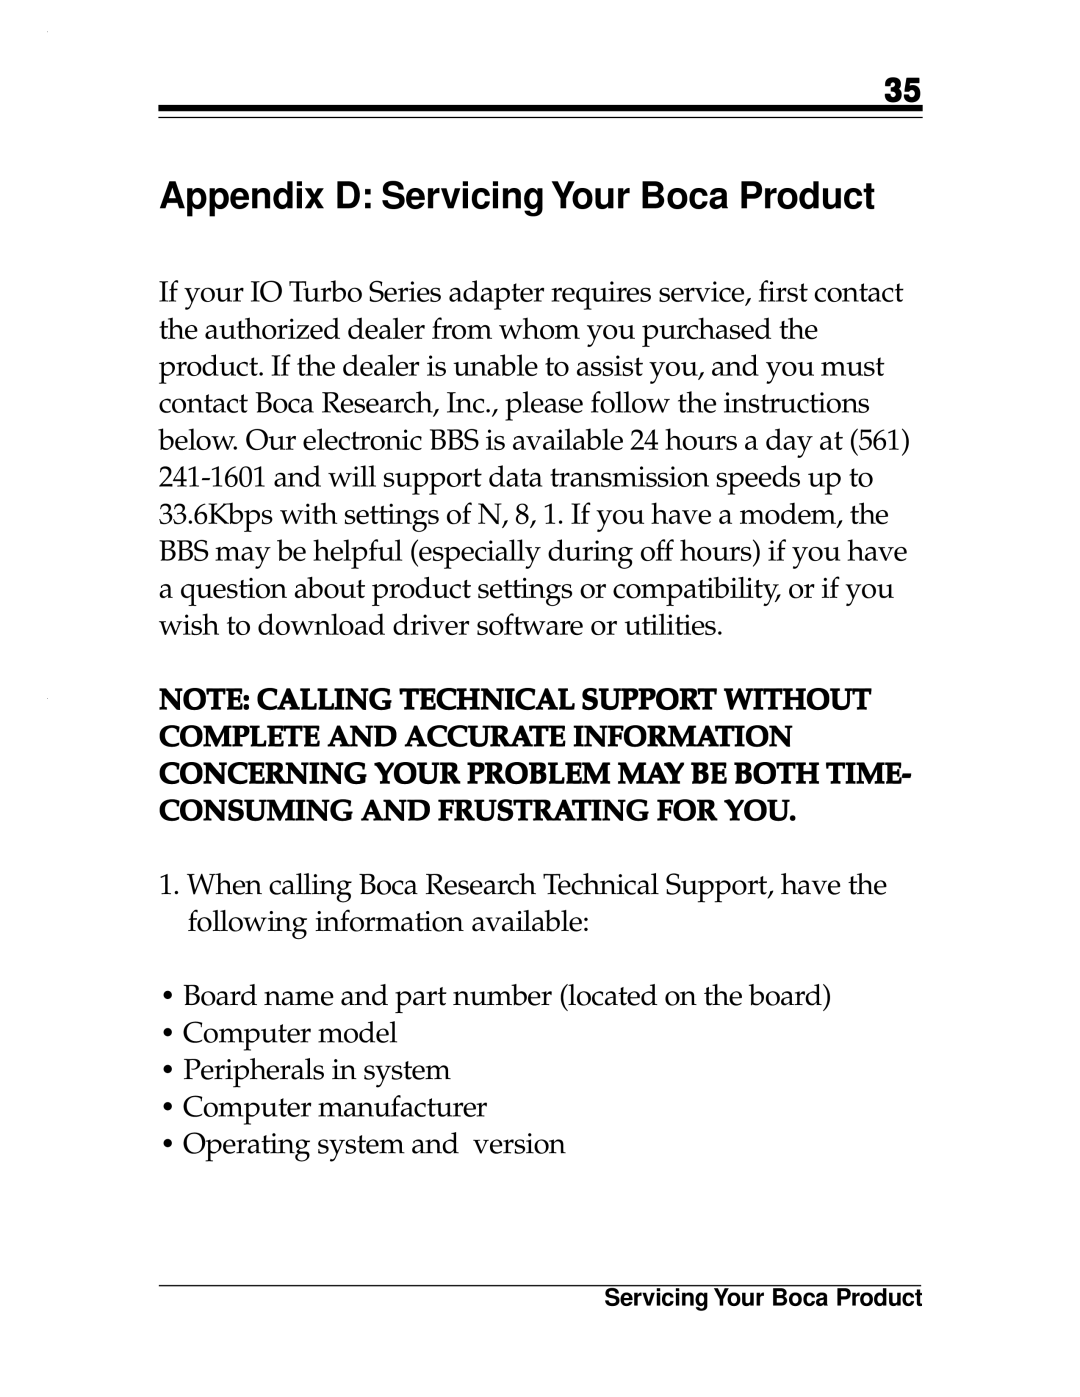 Boca Research 2x2, Turbo1x1 manual Appendix D Servicing Your Boca Product 